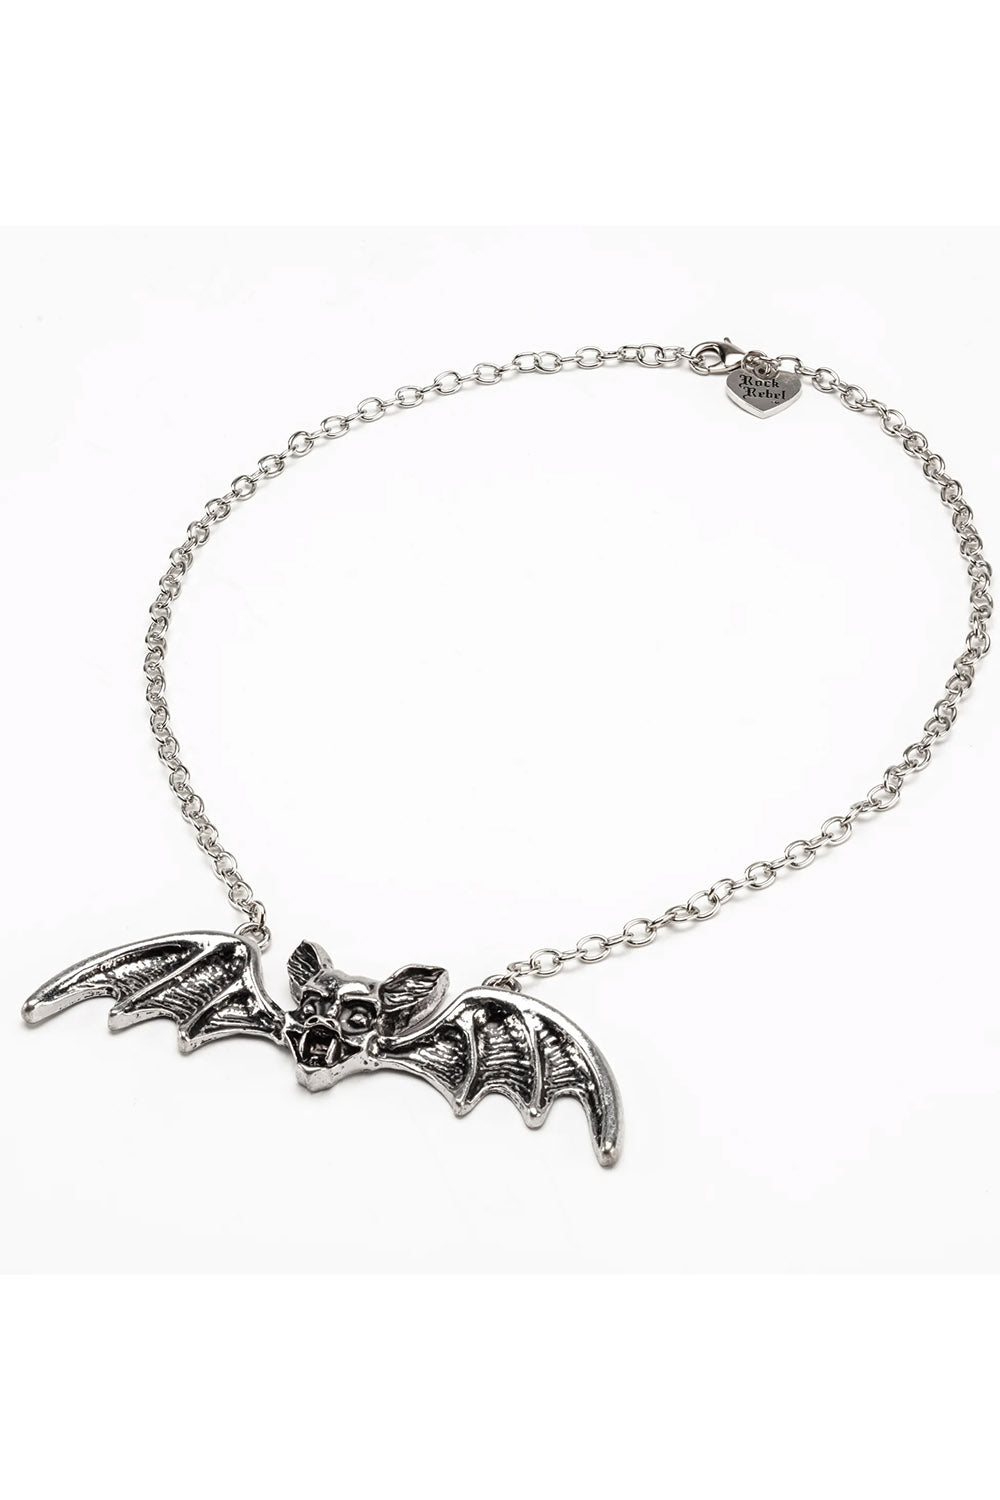 Lily Munster Bat Pendant Necklace [CHROME]